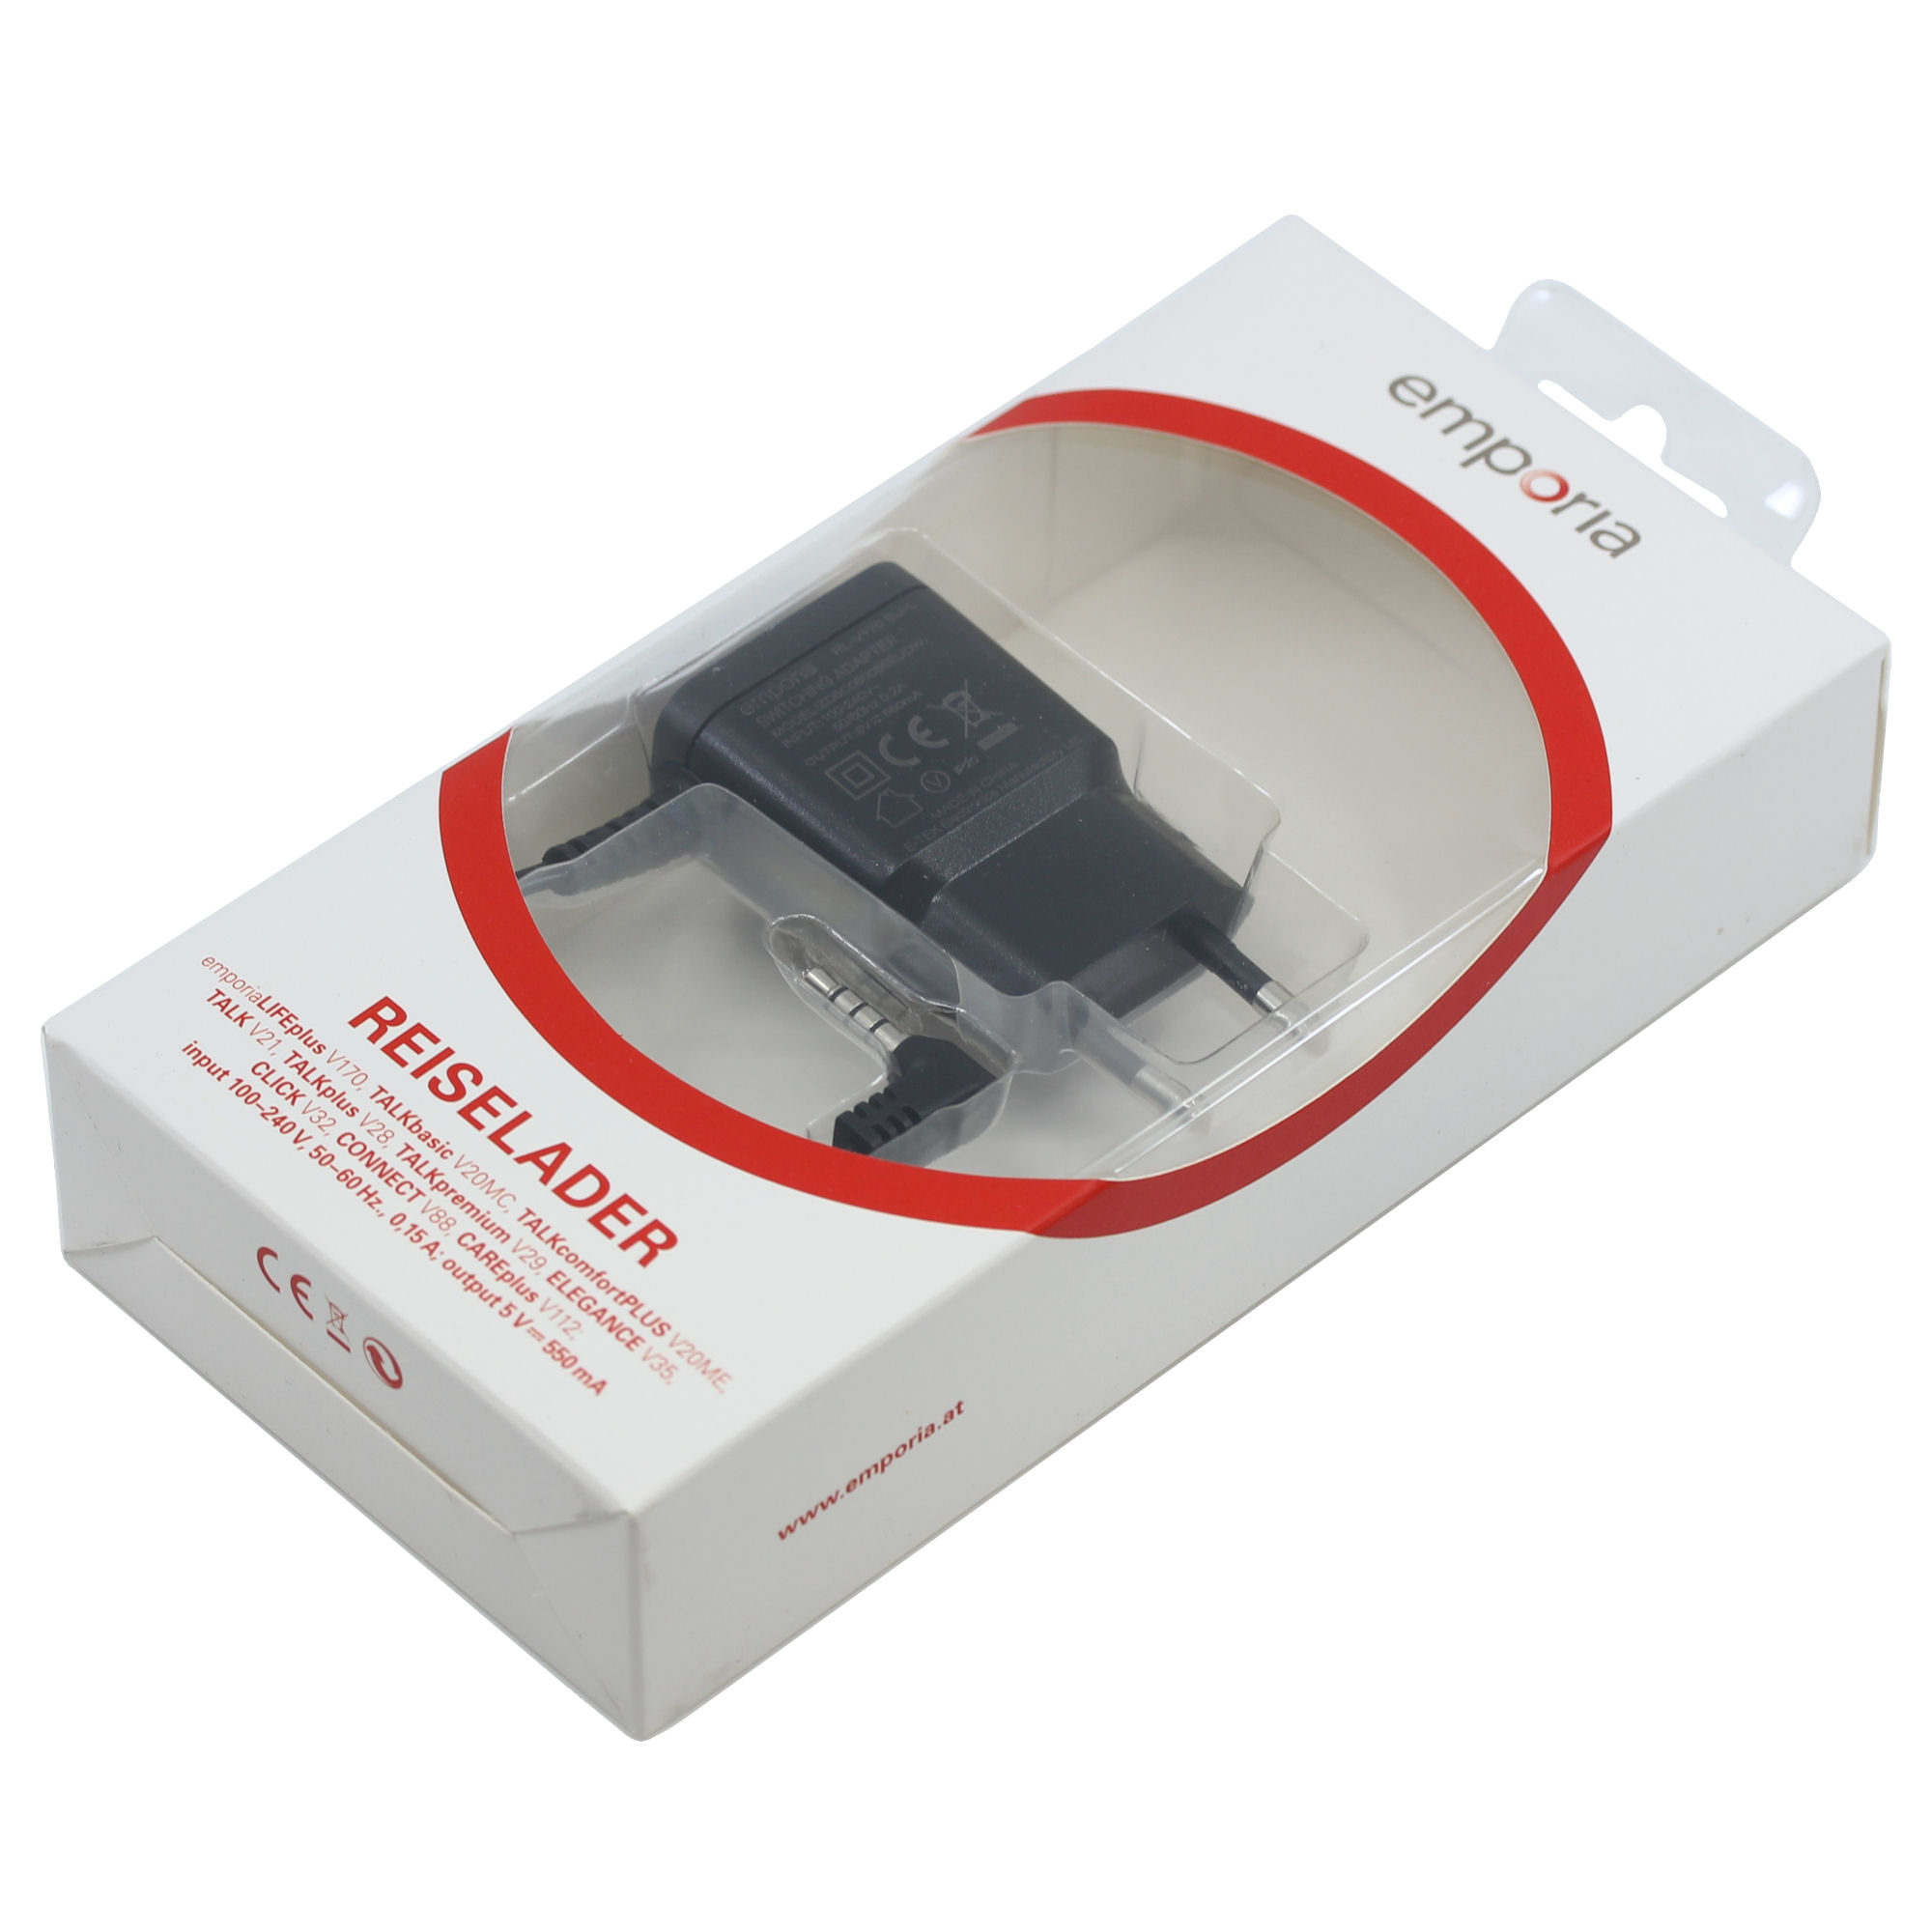 Reeko Design USB KFZ Adapter Zigarettenanzünder Ladeger - CBO-DO -  Onlineshop für neue & gebrauchte Computerartikel